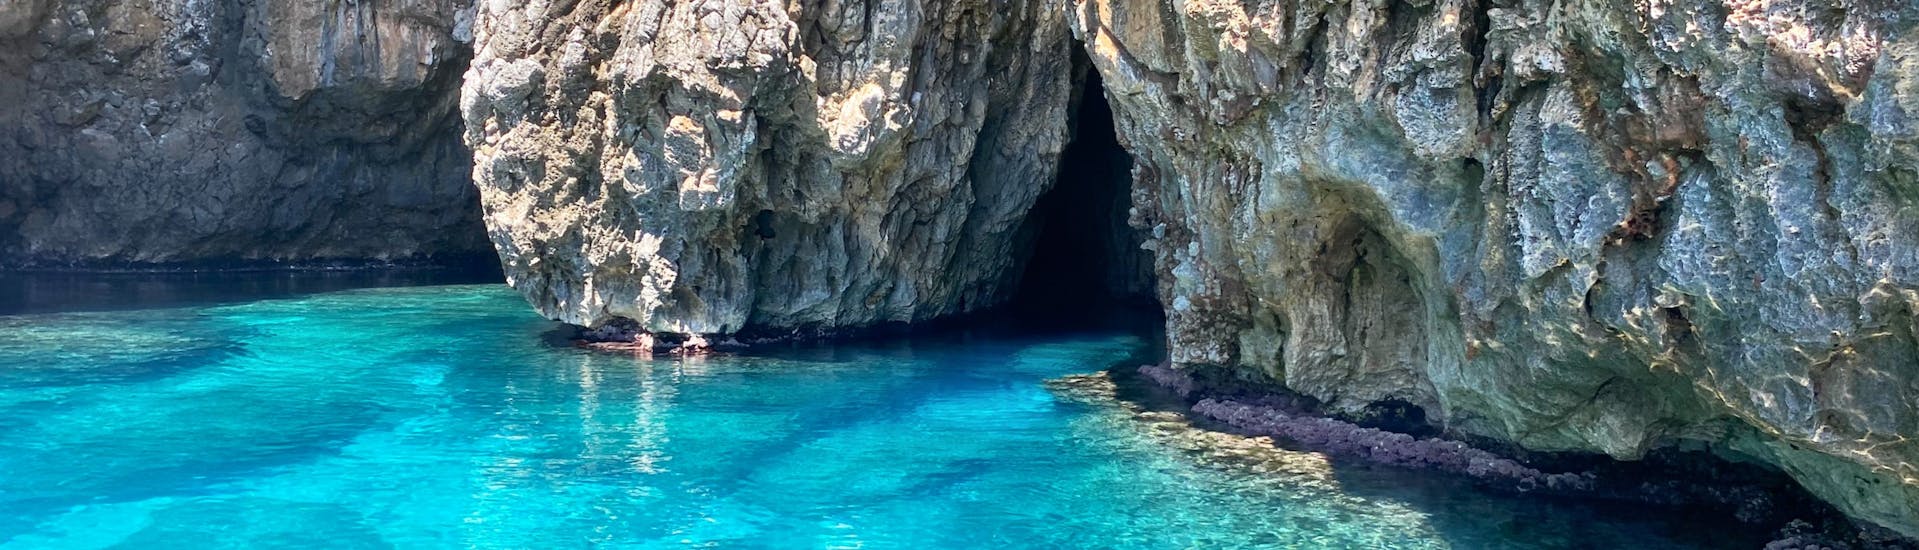 Giro in barca alle grotte di Santa Maria di Leuca con snorkeling e aperitivo.